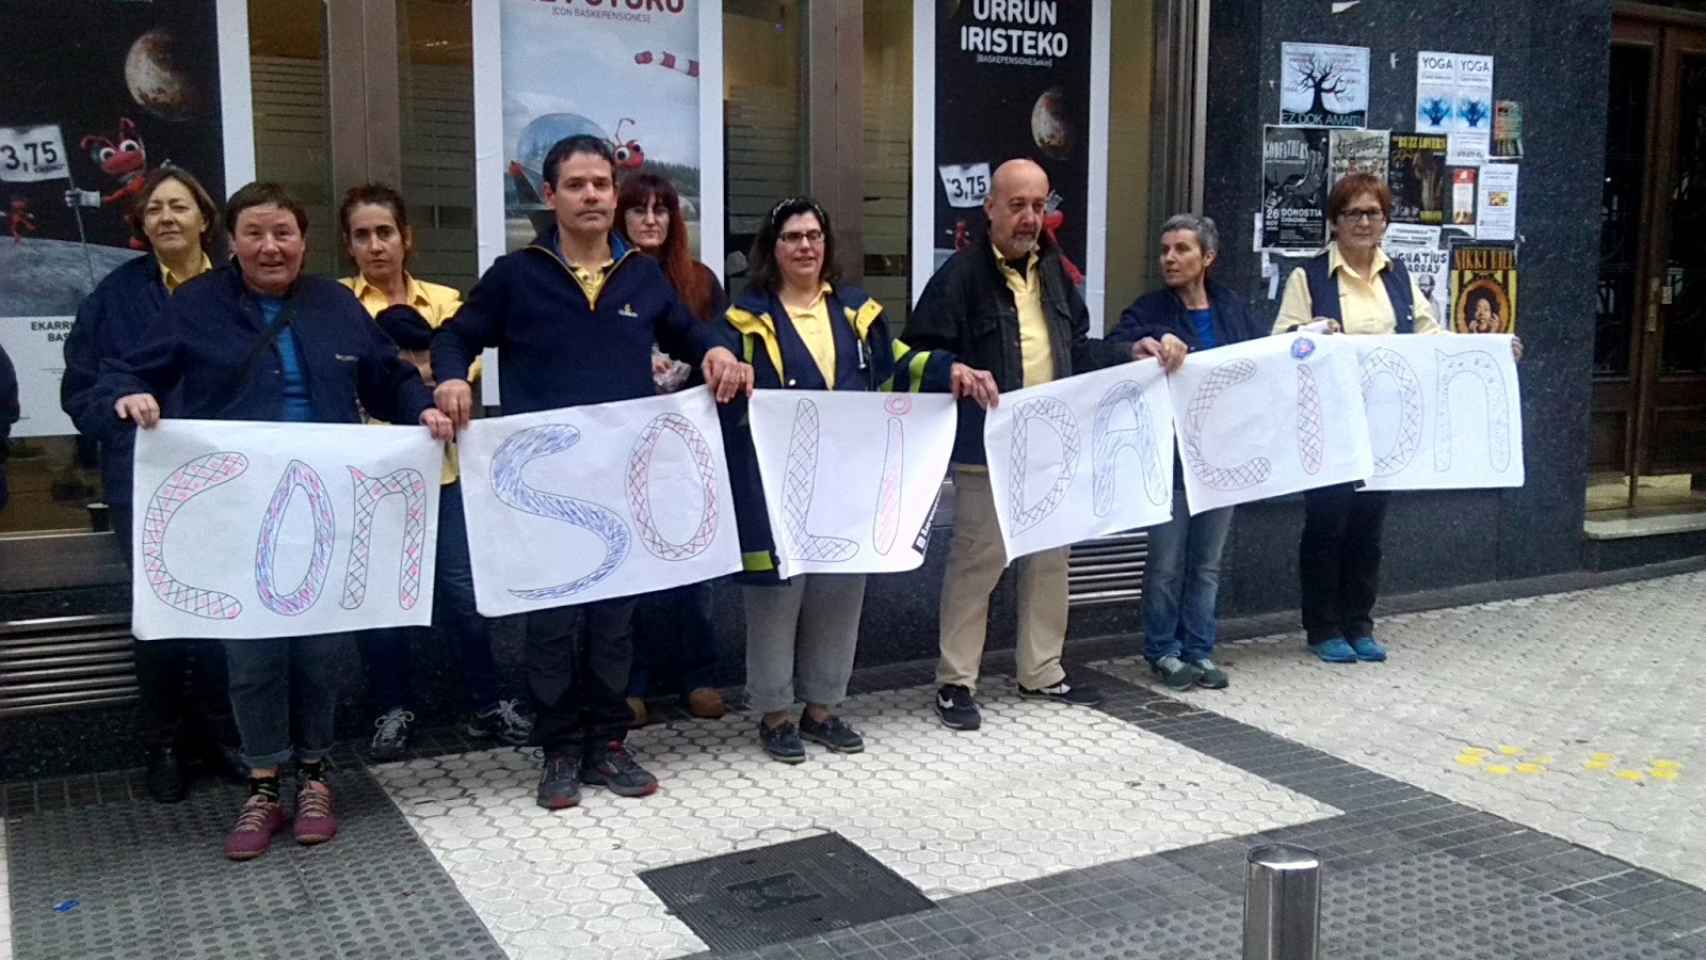 La hora del bocadillo está tan arraigada como tiempo libre para los trabajadores que en algunos casos, como el de la imagen tomada en San Sebastián en 2015, se aprovecha para manifestarse